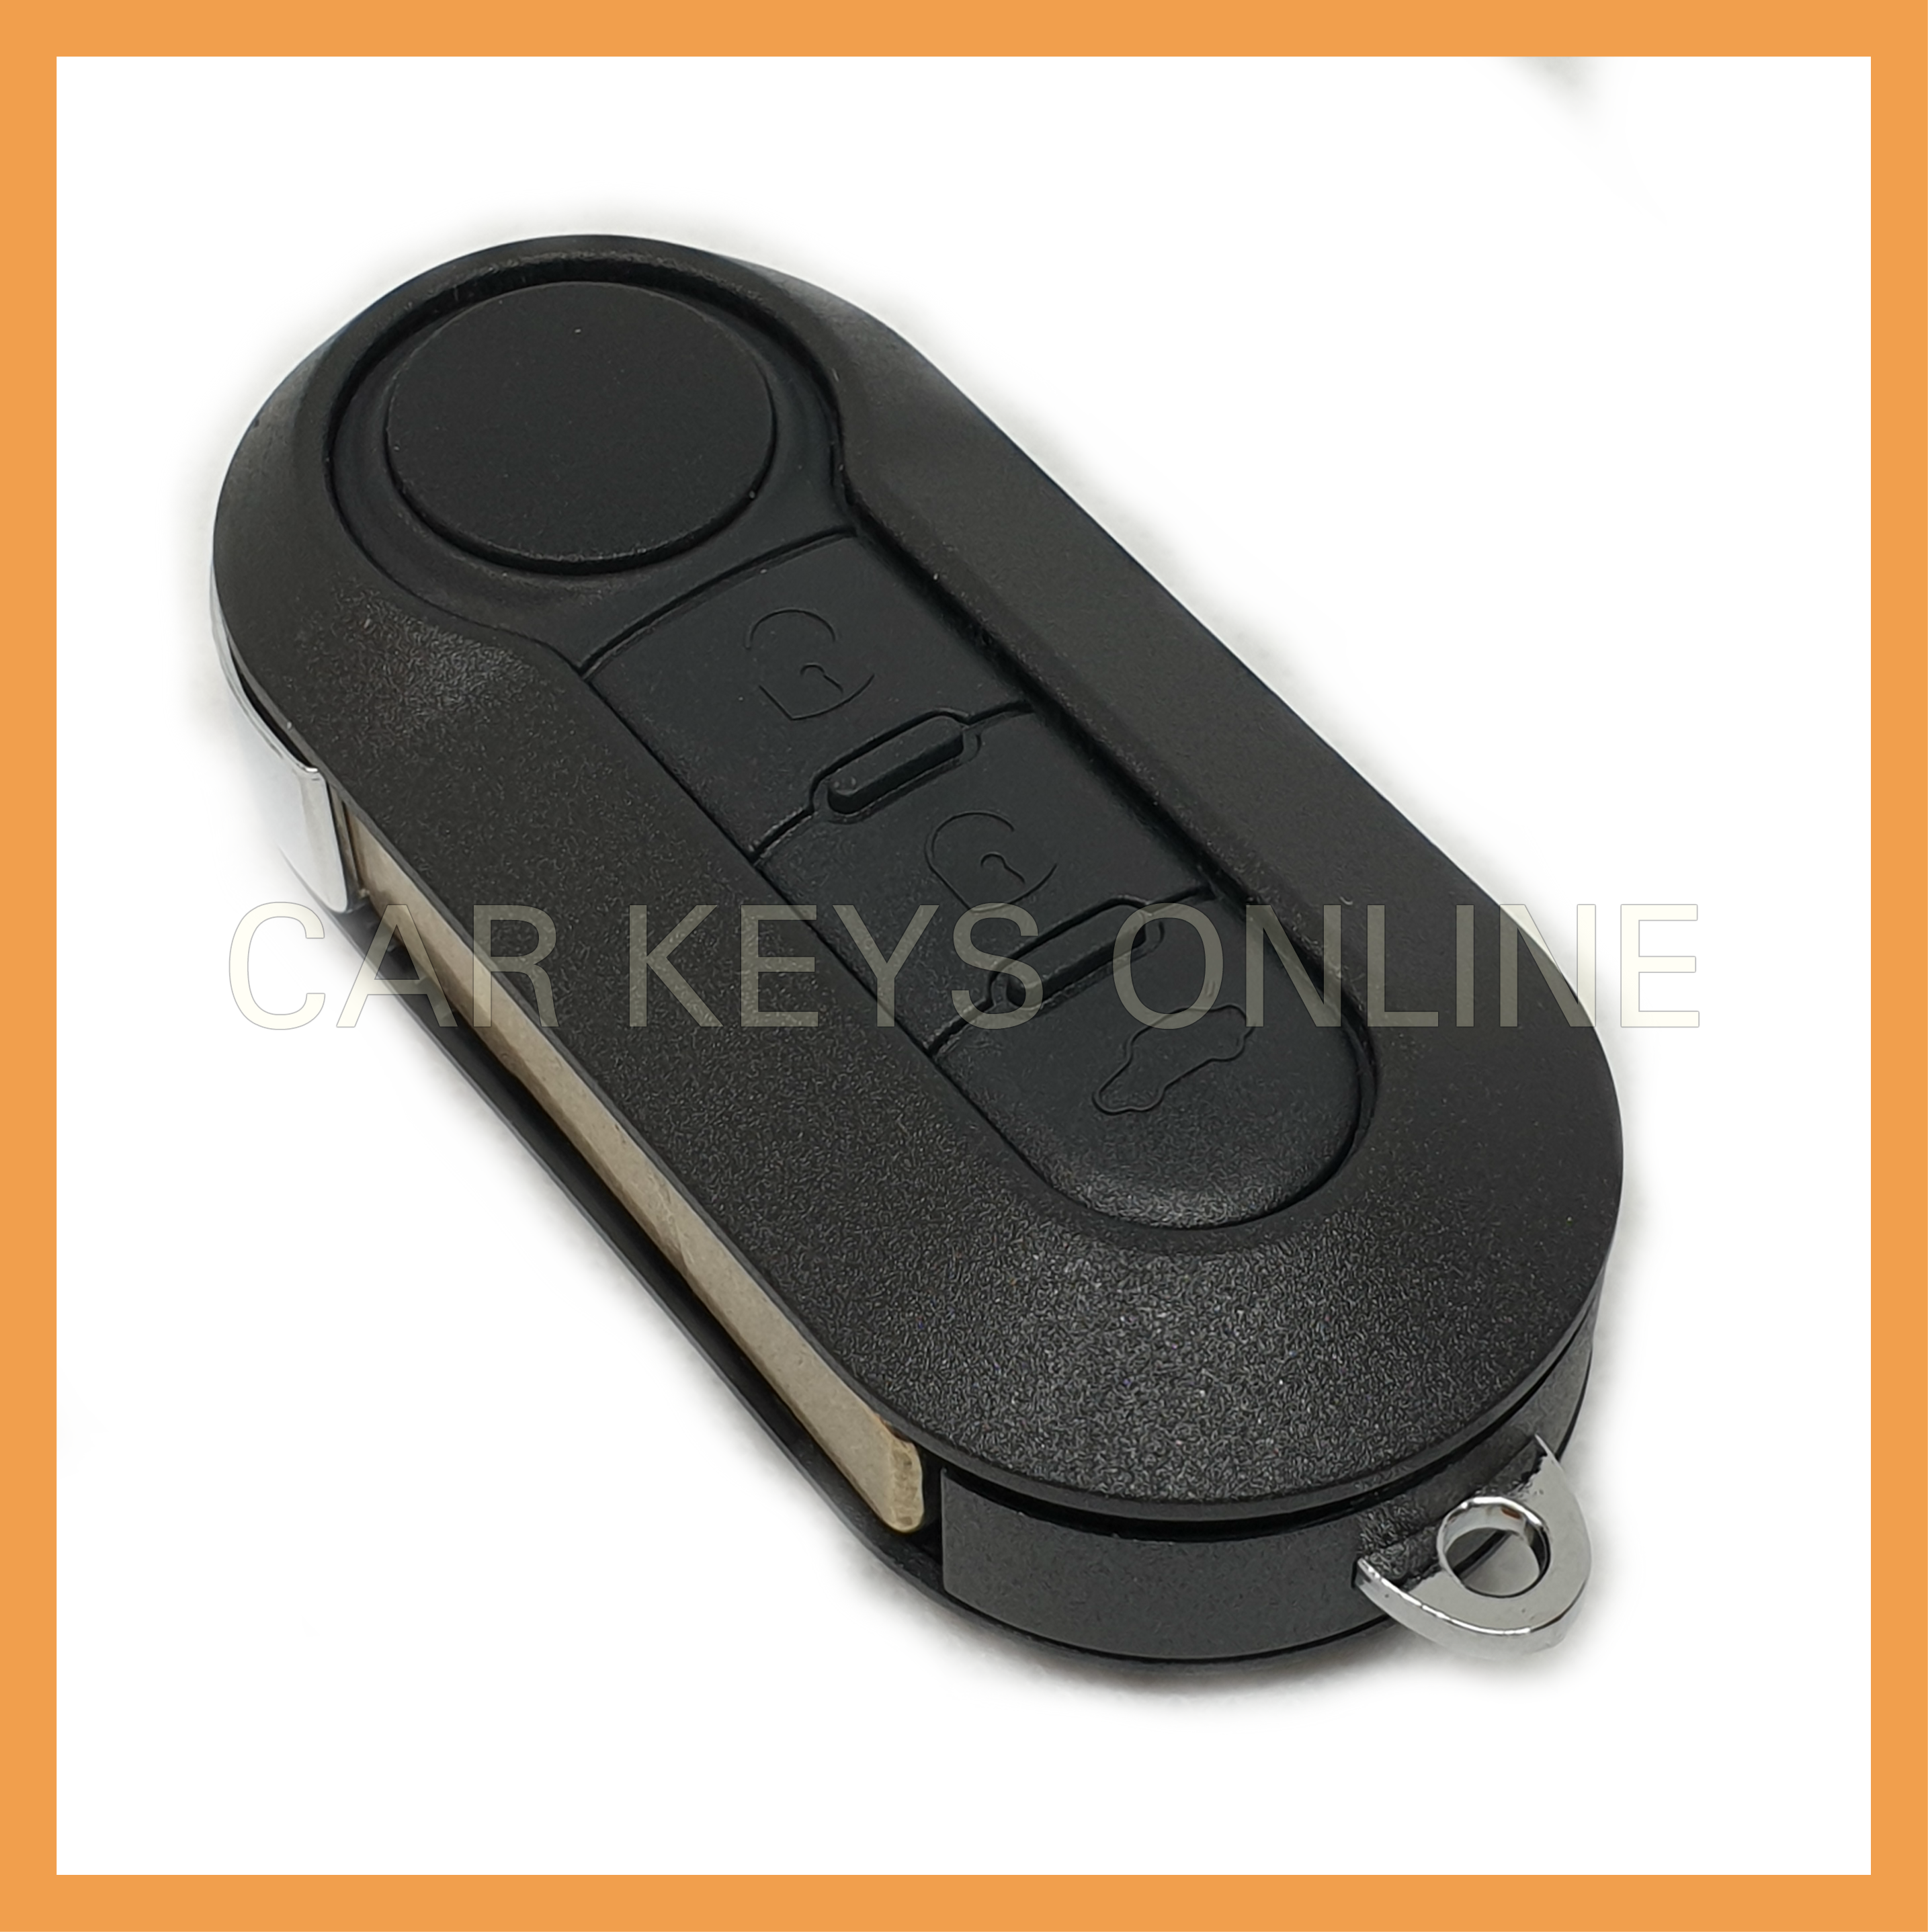 Aftermarket Remote Key for Ford Ka (2008 - 2016)